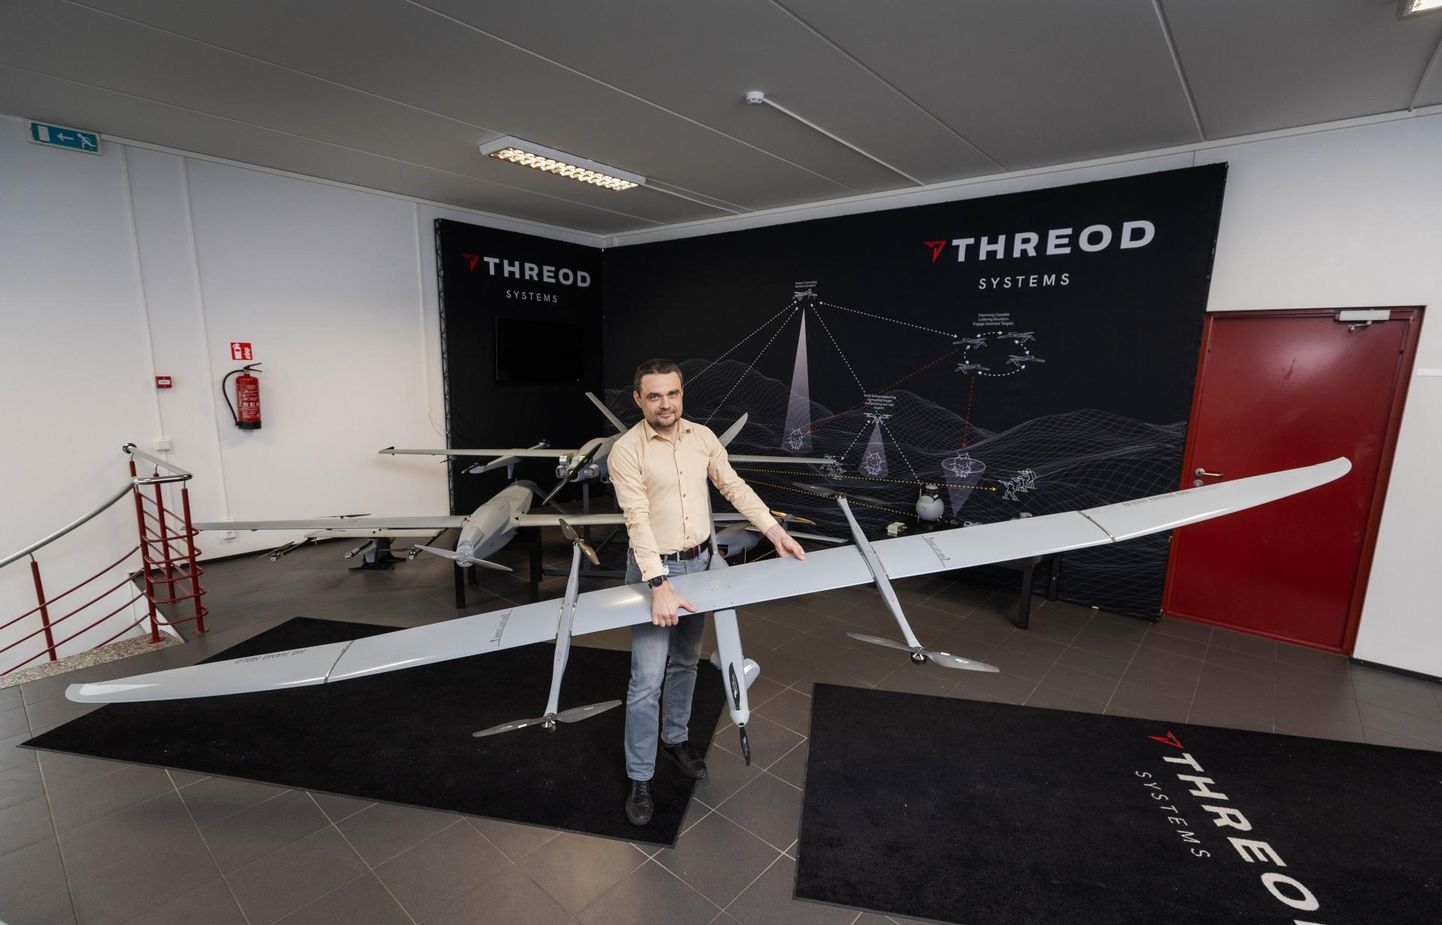 Эстонская компания Threod Systems отправила в Украину более полусотни наблюдательных дронов, которые могут находиться в воздухе до трех часов и летать на расстоянии до 50 километров. На фото Арно Вайк, глава компании Threod Systems, производящей разведывательные дроны.